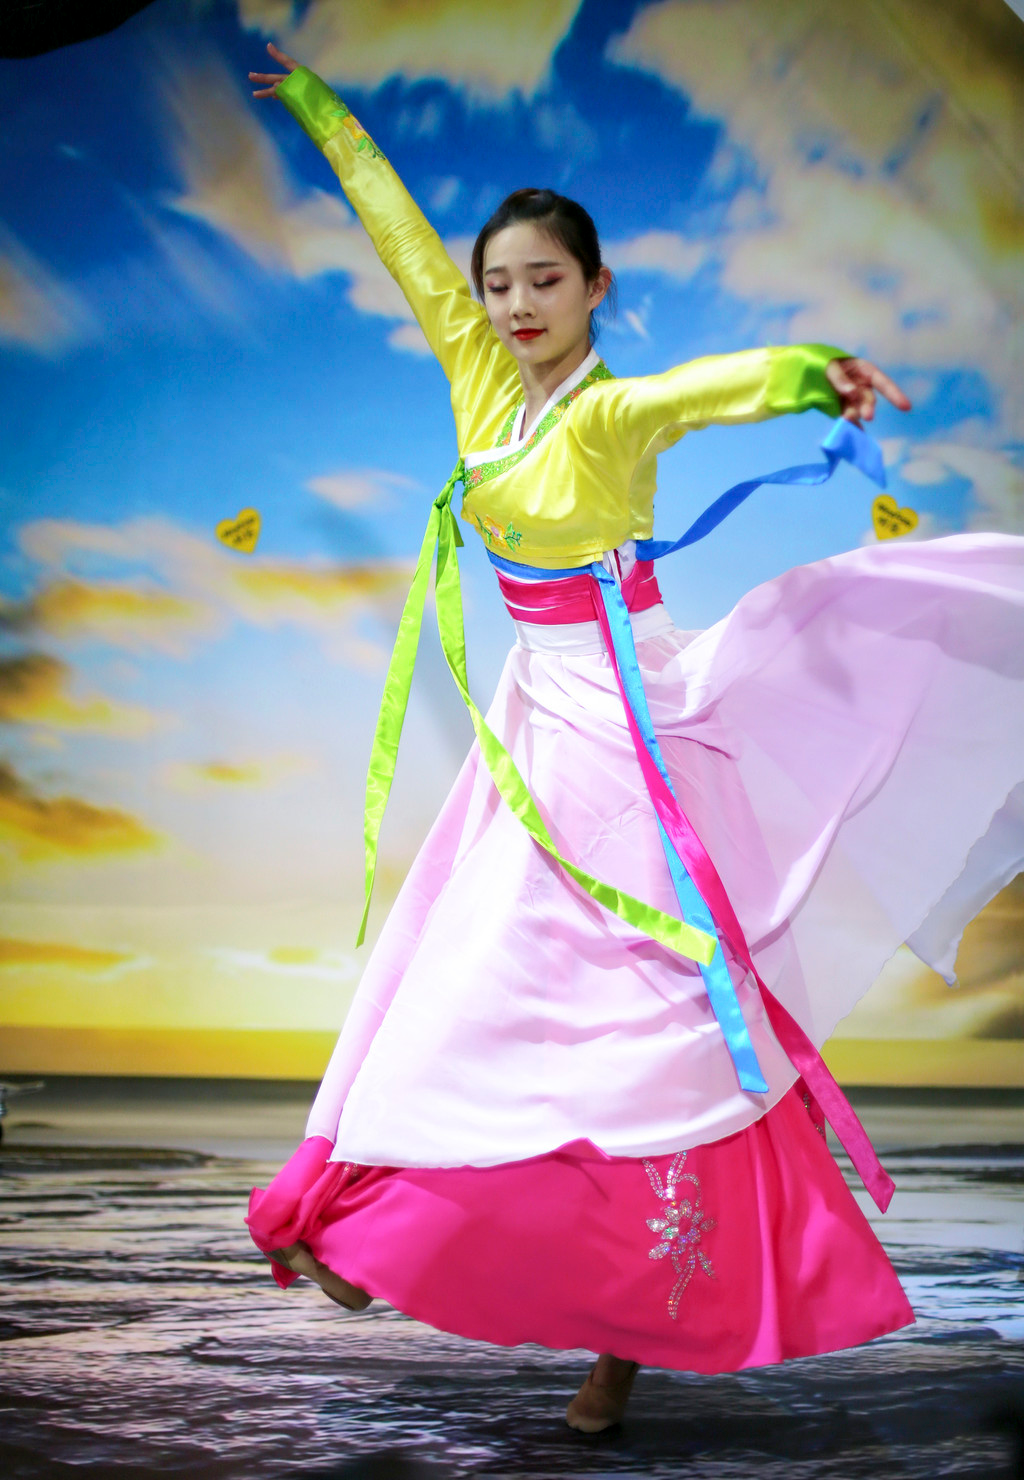 看了这名朝鲜姑娘的舞蹈,我想去朝鲜当女婿了!